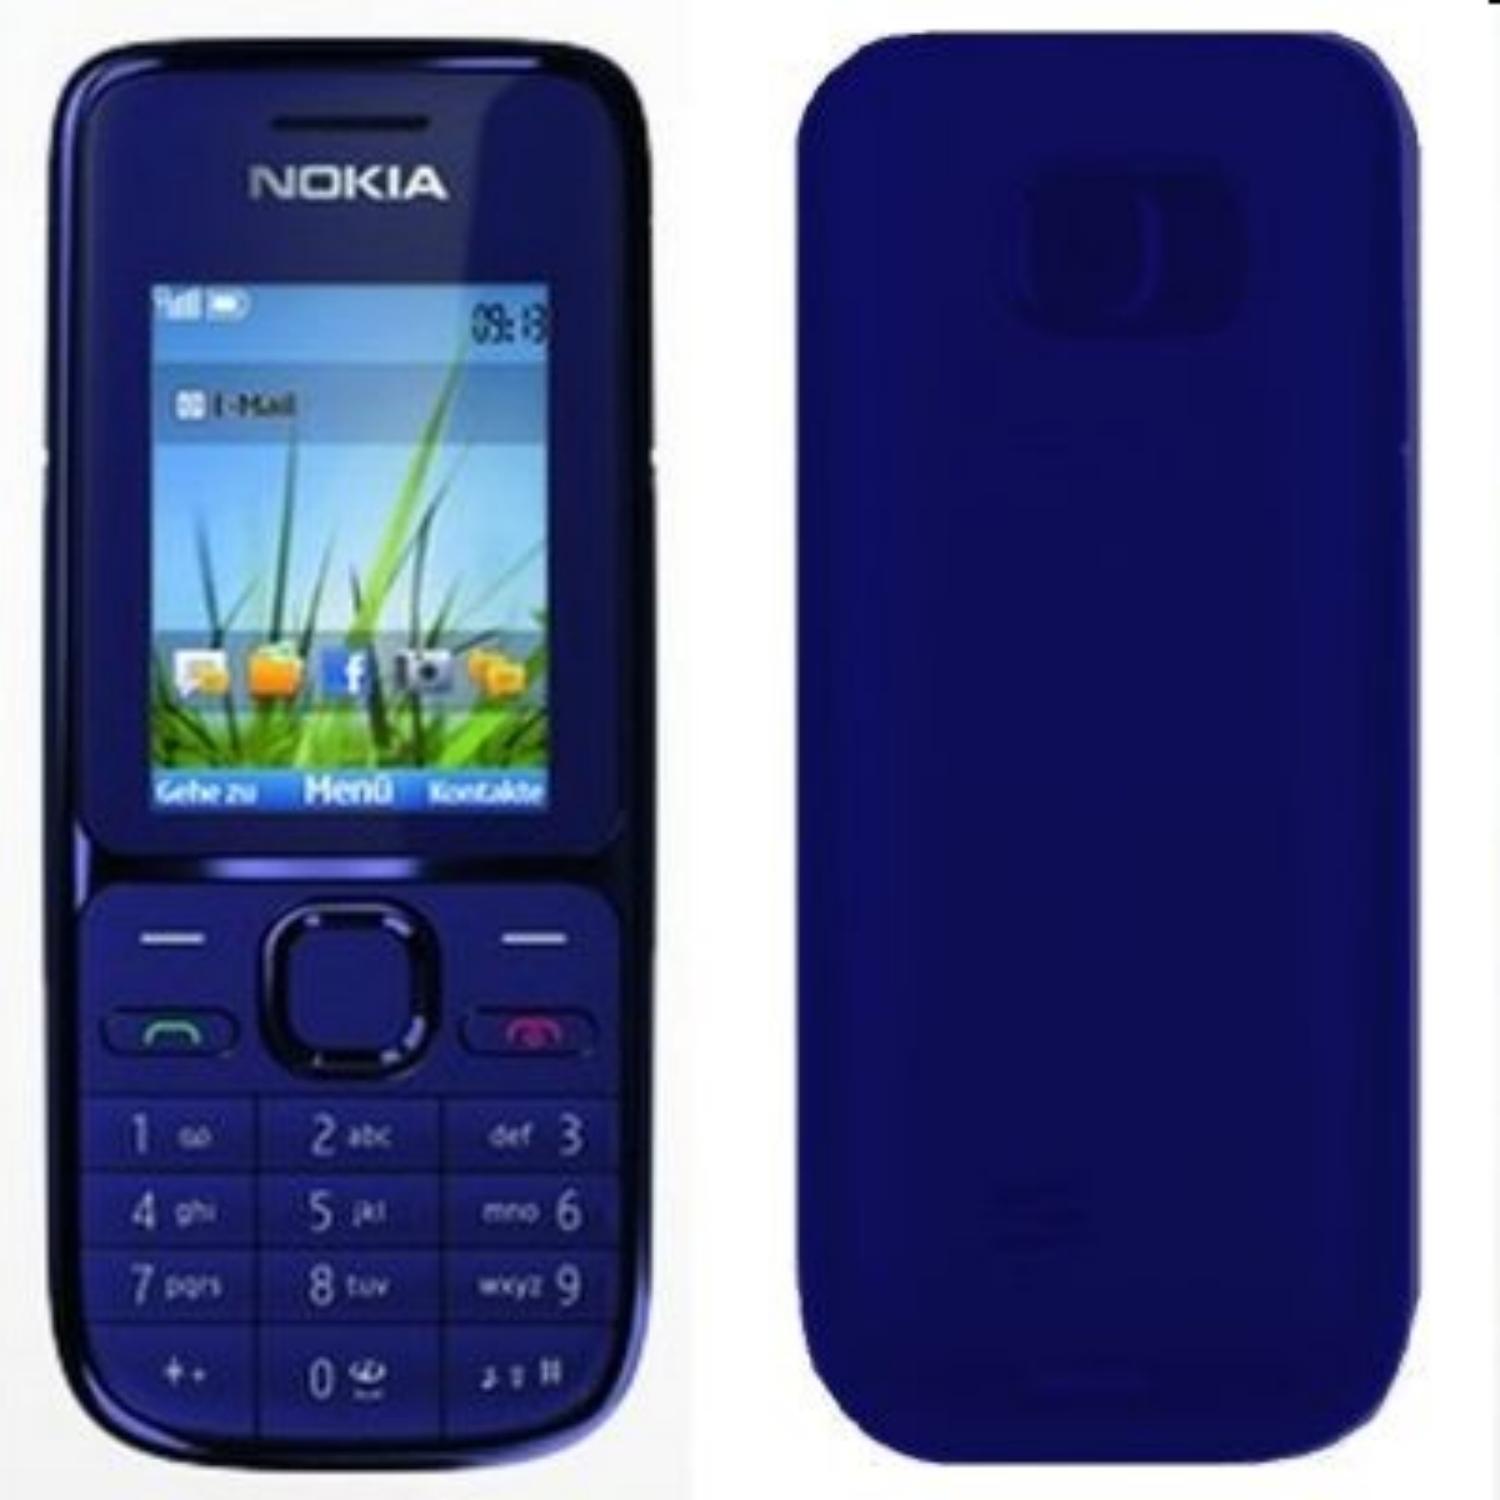 Foto Nokia C2-01 dark Azul foto 385396